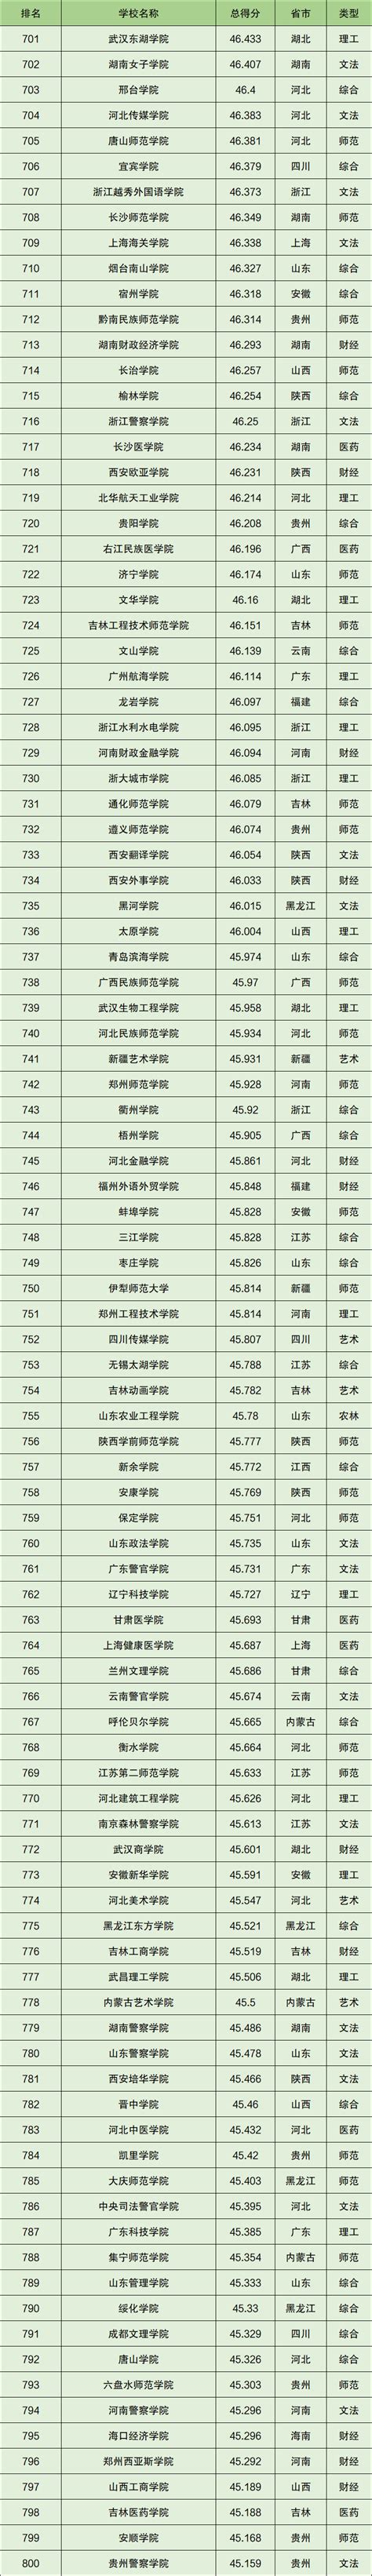 2021年中国大学排名完整版最新-中国大学排行榜2021官方排名-高考100